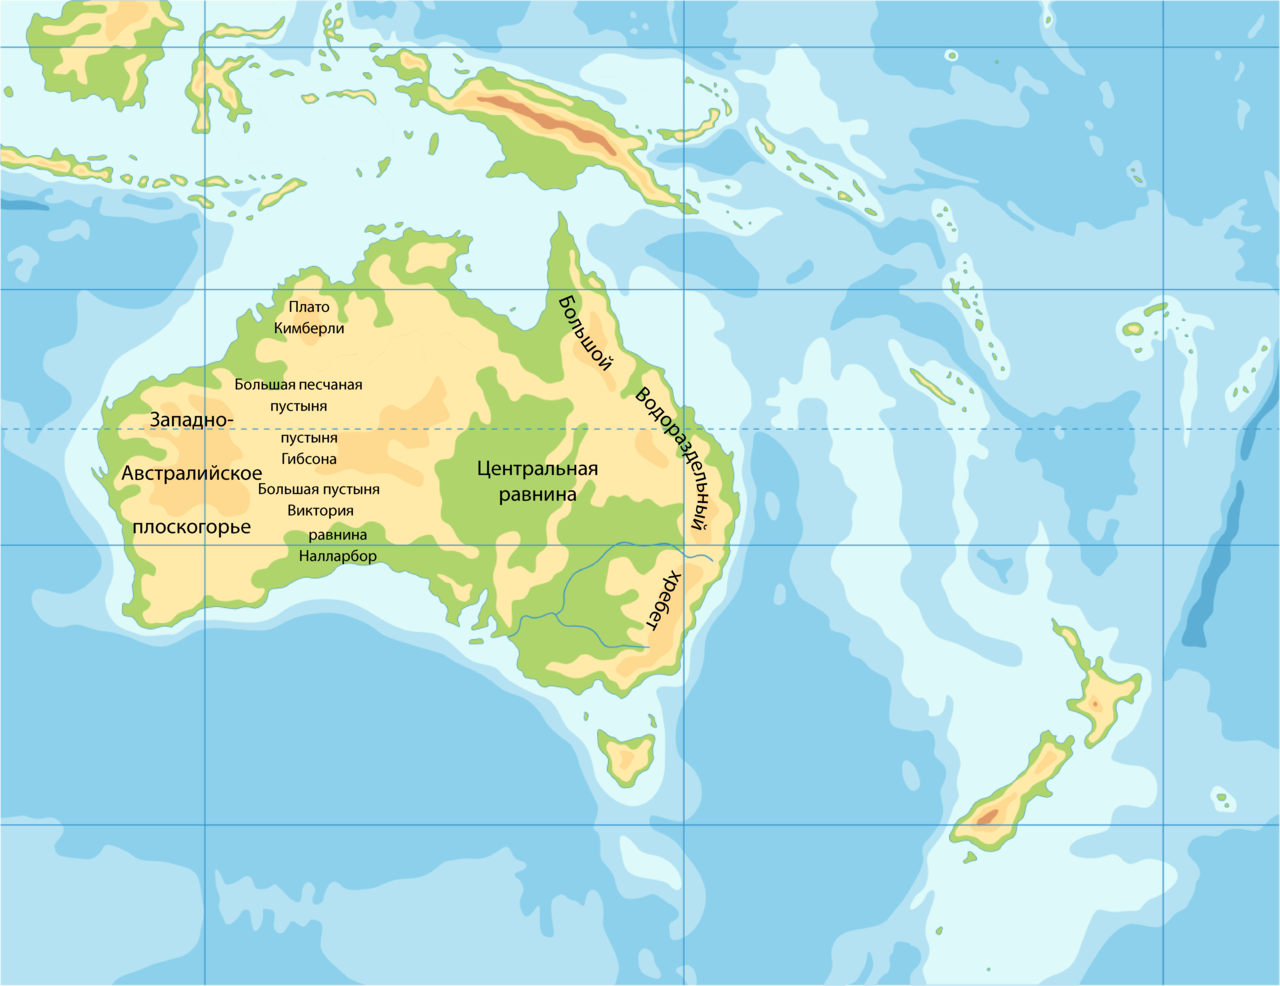 Плато кимберли где. Формы рельефа Австралии на карте. Центральная равнина в Австралии на контурной карте. Западно австралийское плоскогорье на карте Австралии. Западноавстралийское пласкогорье на карте.